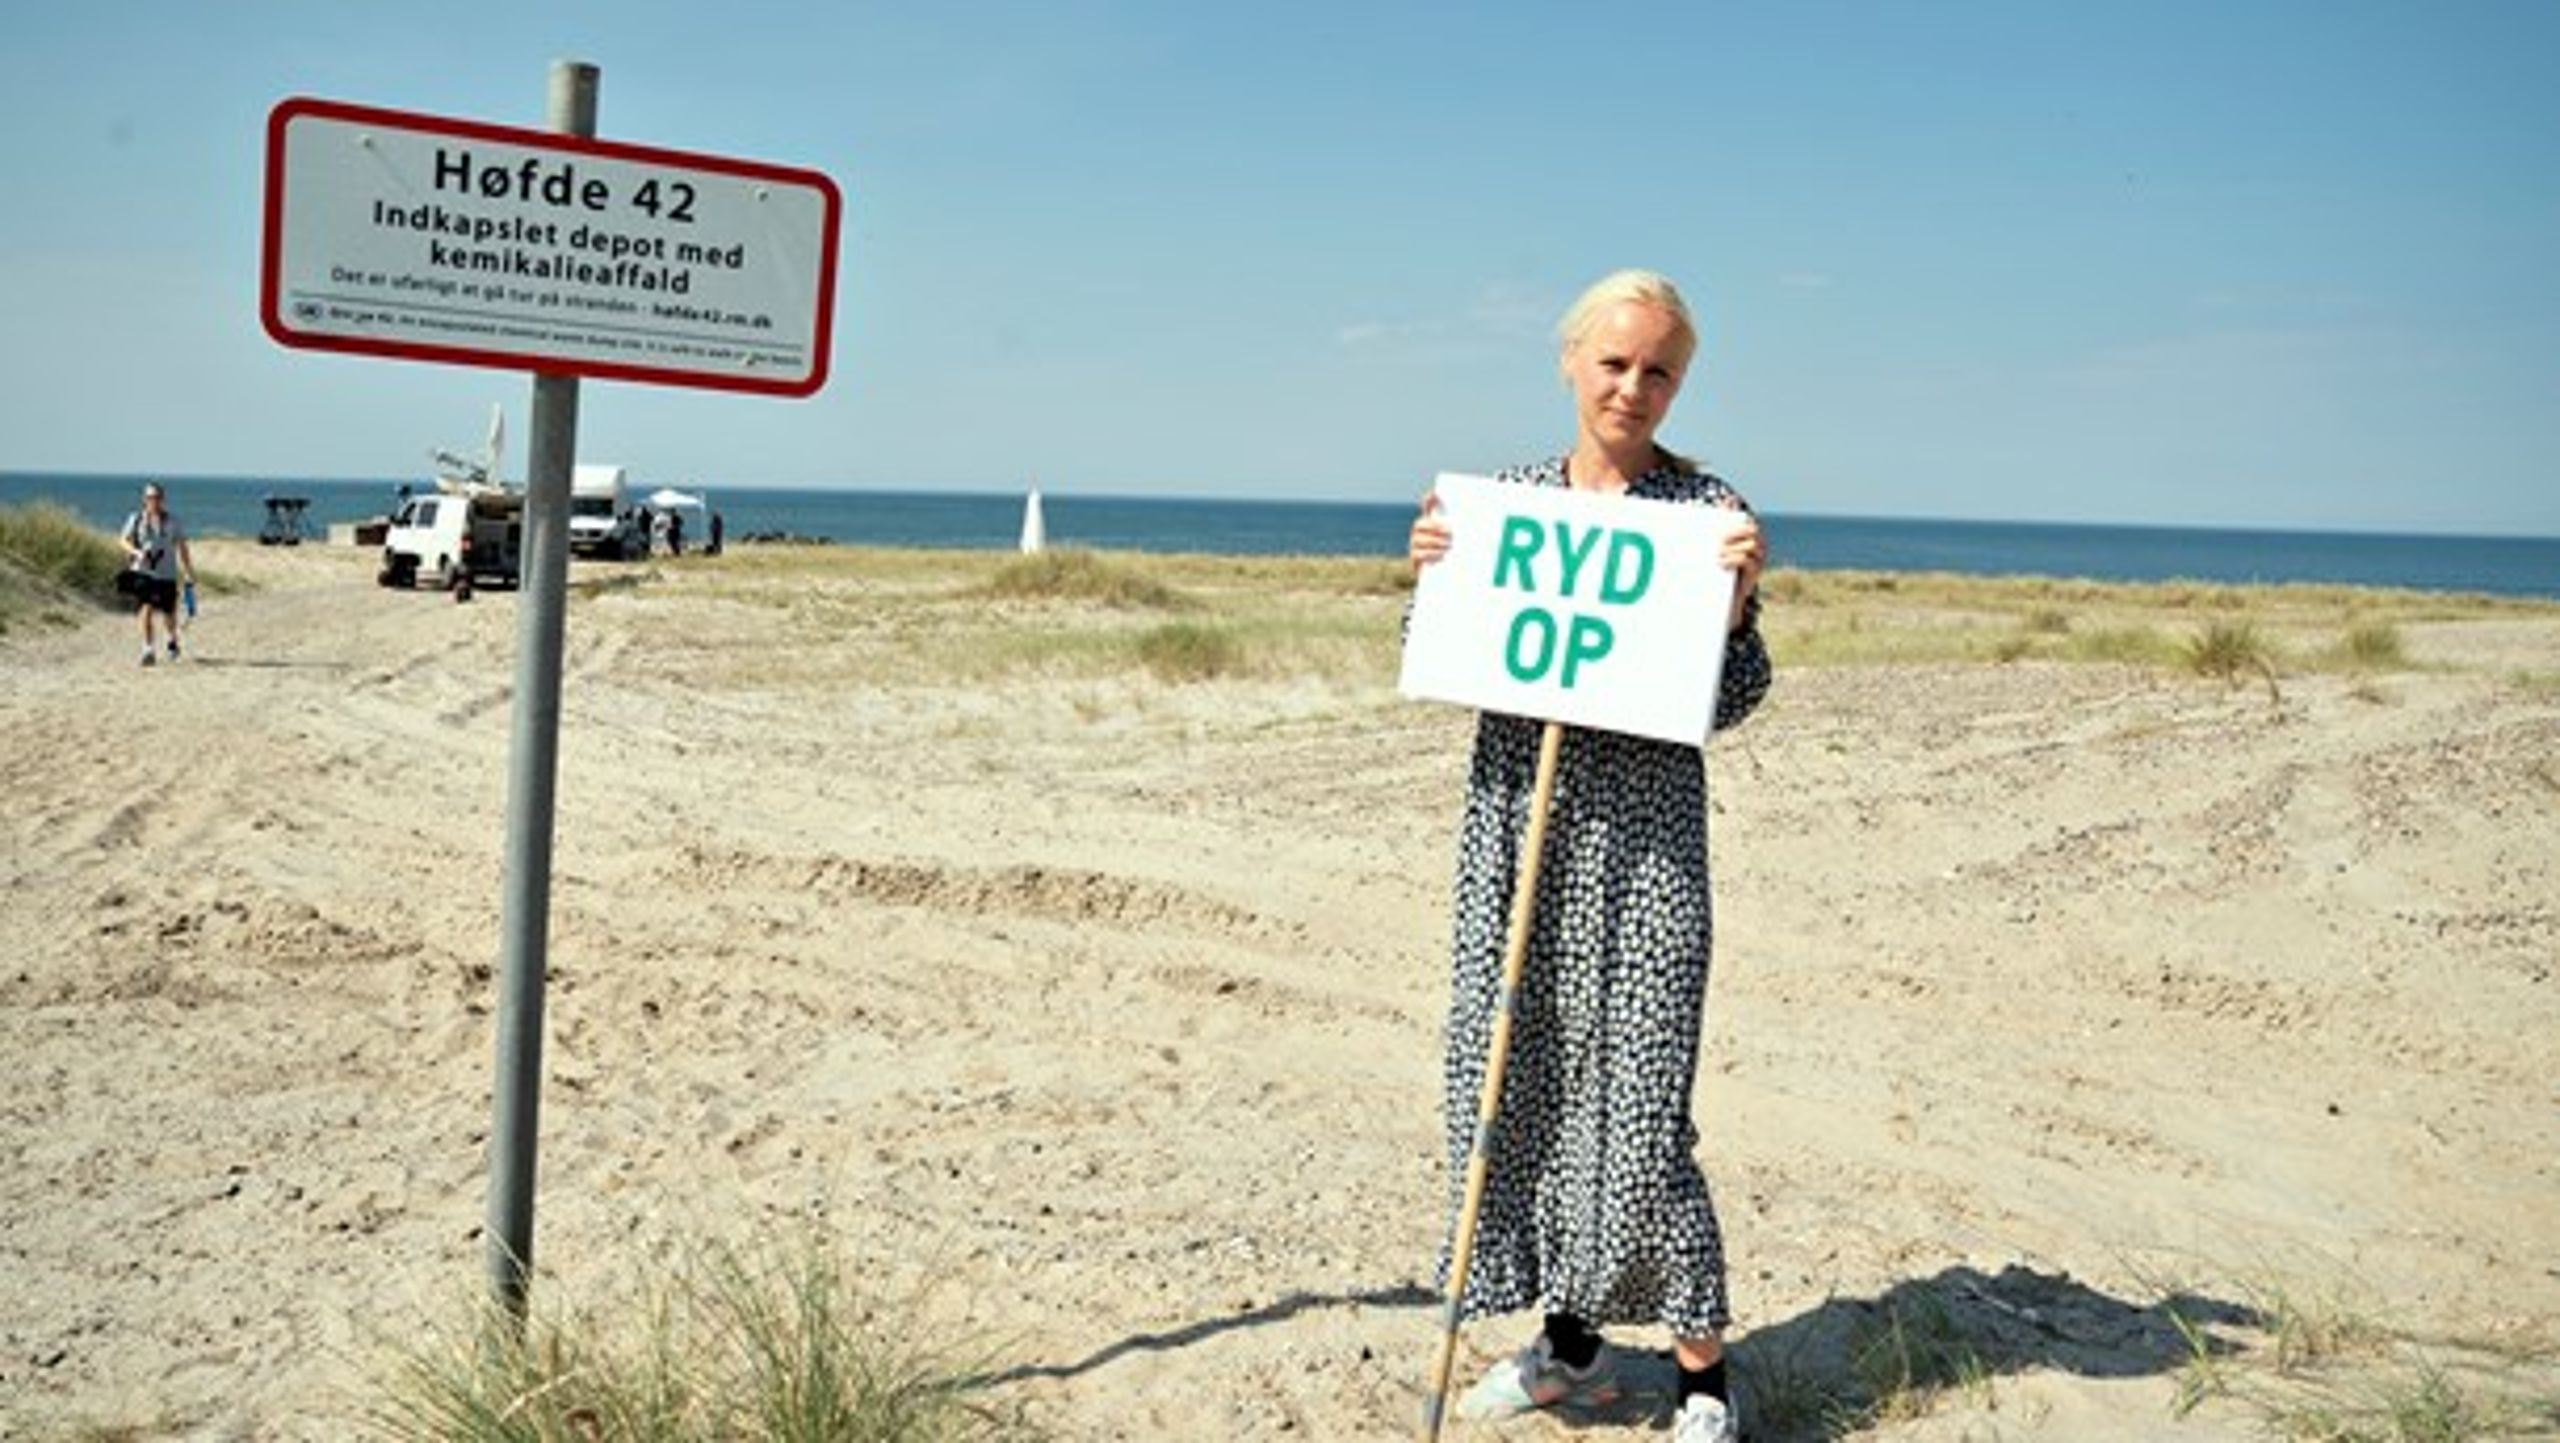 Det naturskønne område langs kysten mellem Thyborøn og Harboøre bliver nu befriet for den stigmatiserende forurening, skriver Signe Munk (SF) og Søren Bukh Svenningsen.